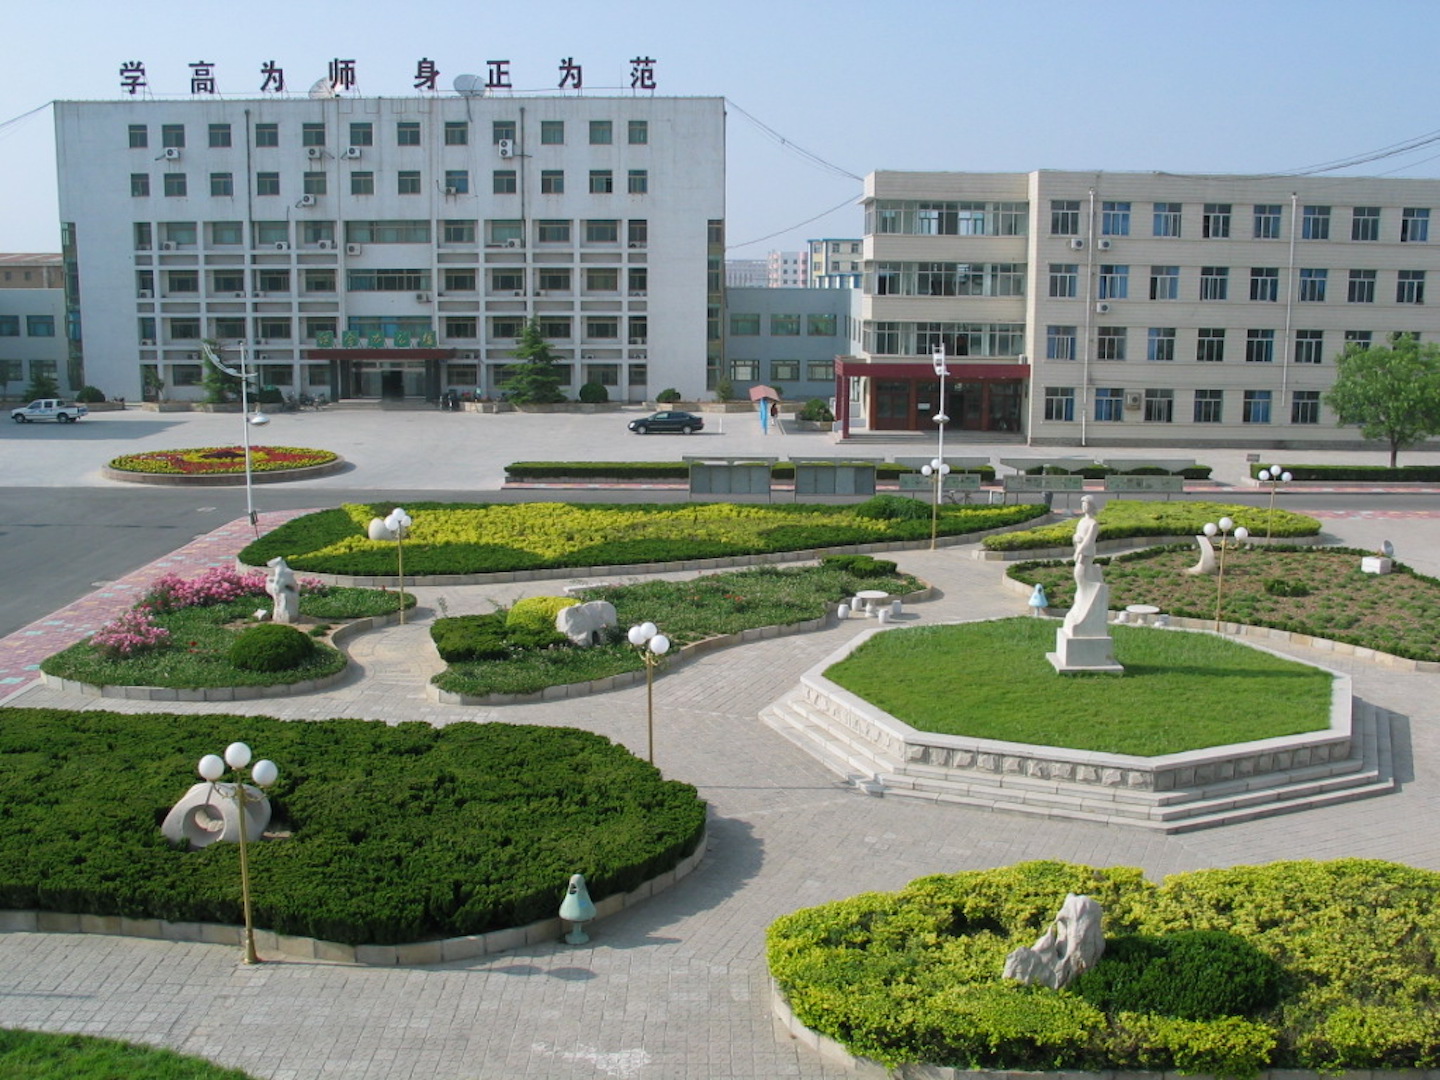 中国石油大学胜利学院属于中国石油大学(华东)下属的独立学院,是